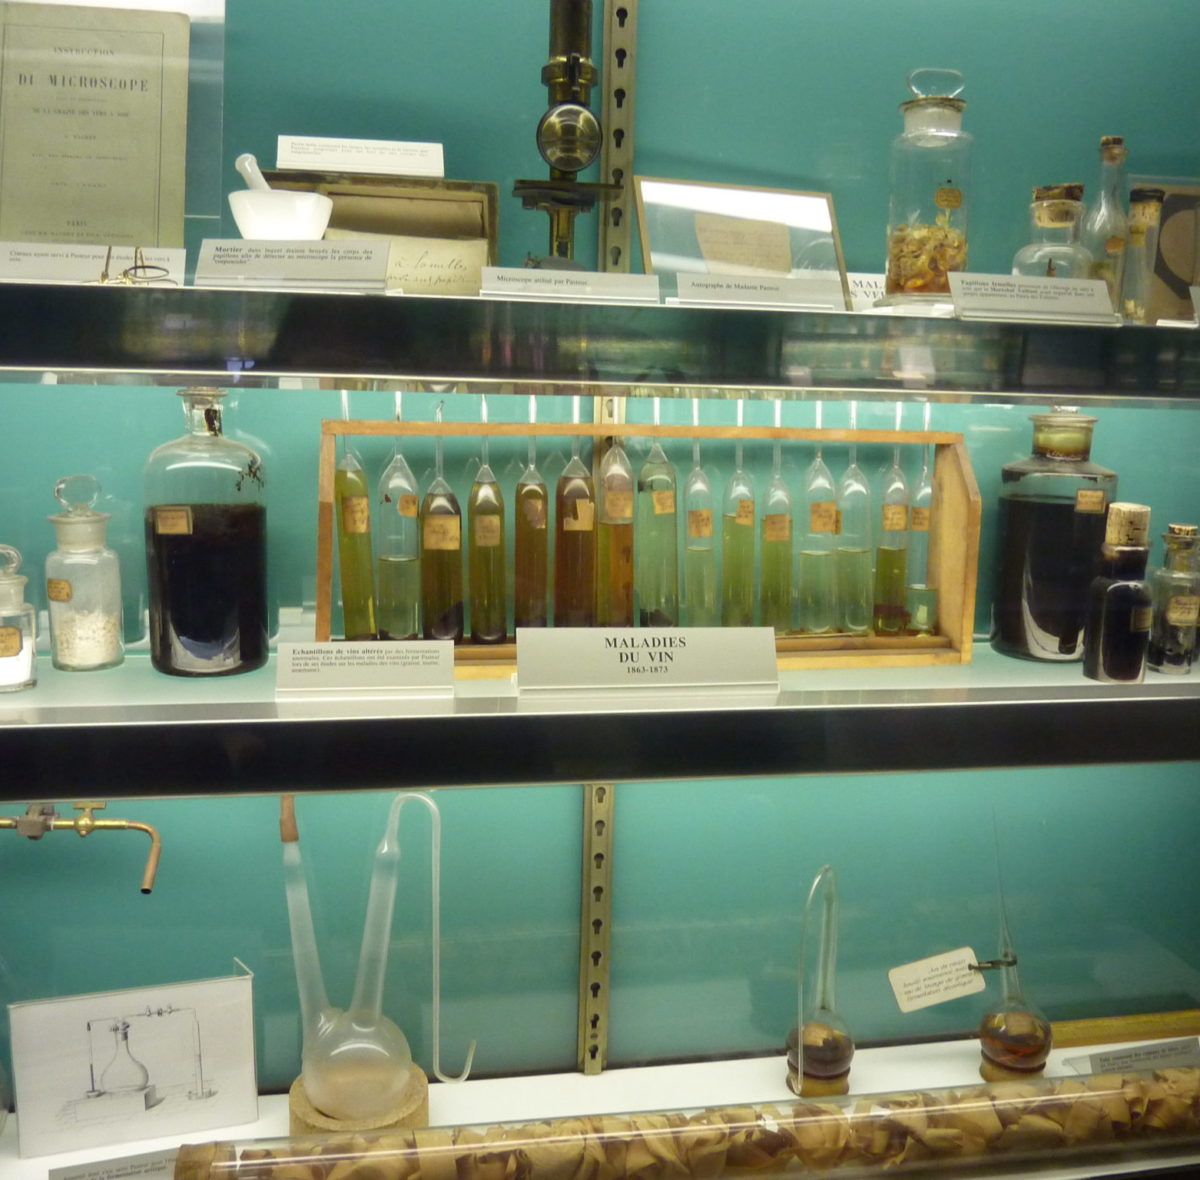 Nelle fiale sono contenuti campioni di vino affetti da varie malattie . Pasteur applicò le sue scoperte per migliorare la produzione del vino , birra e dell’industria della seta , occupandosi delle malattie dei bachi da seta